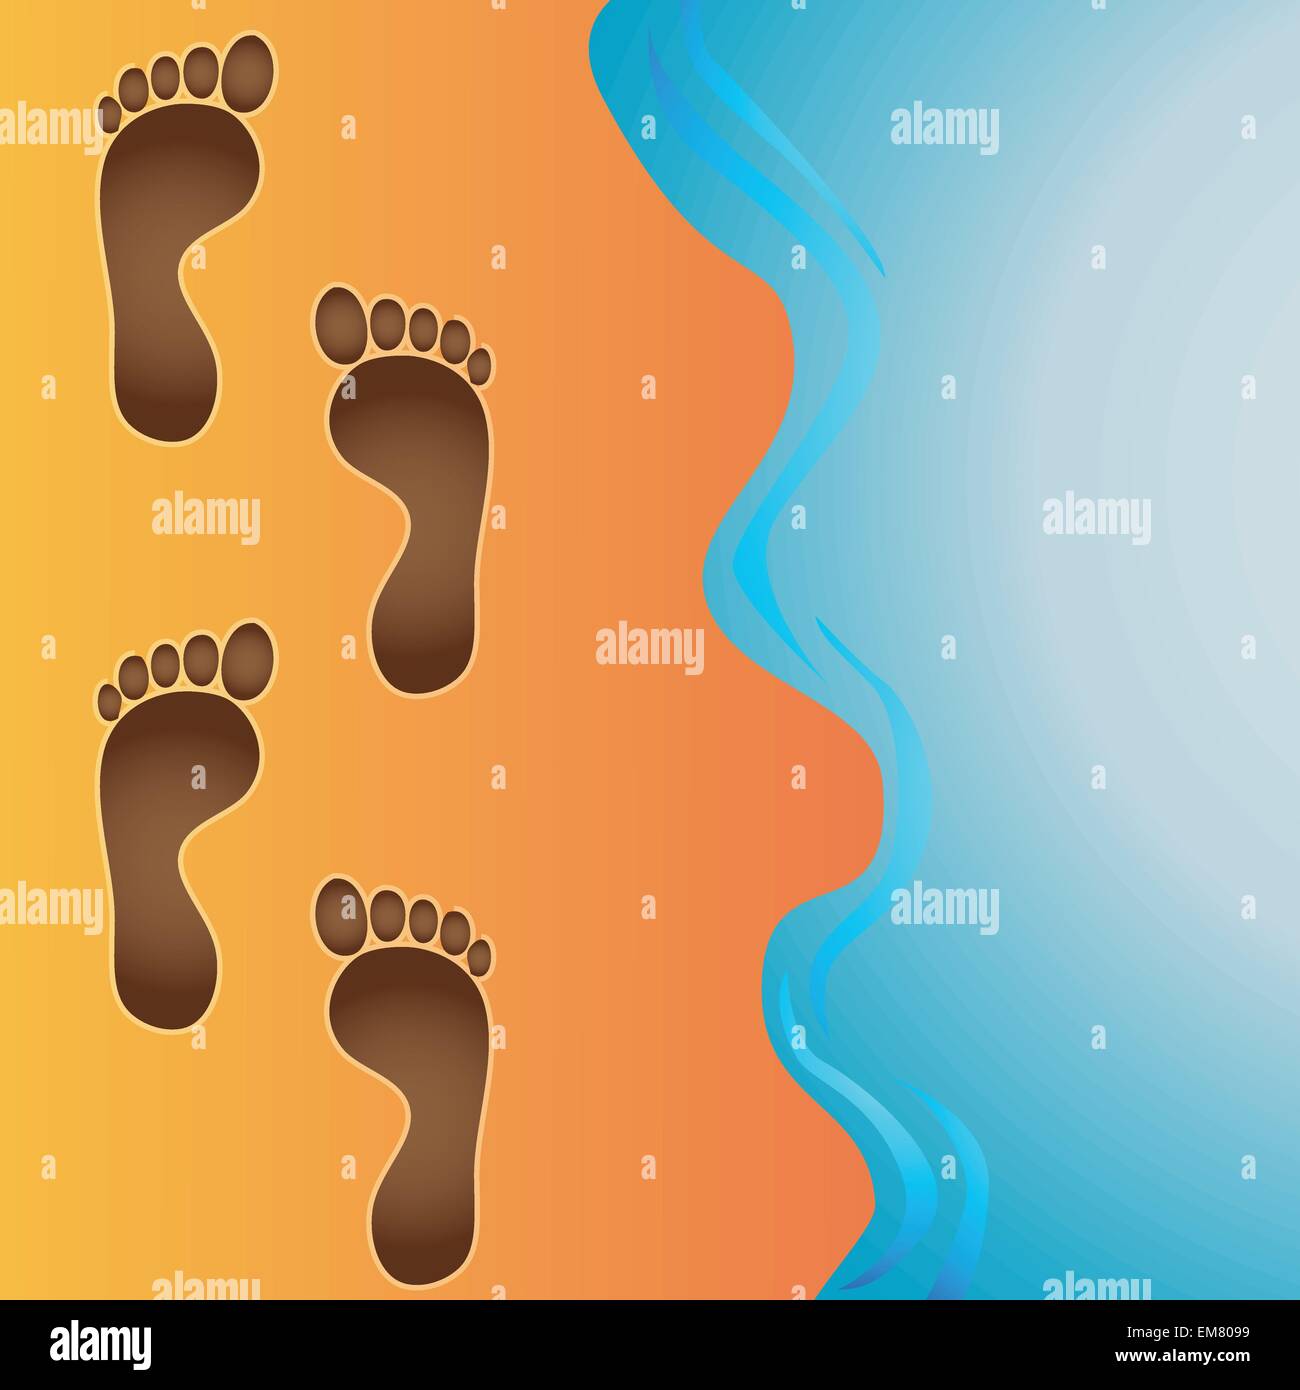 footprints in sand vector Stock Vector